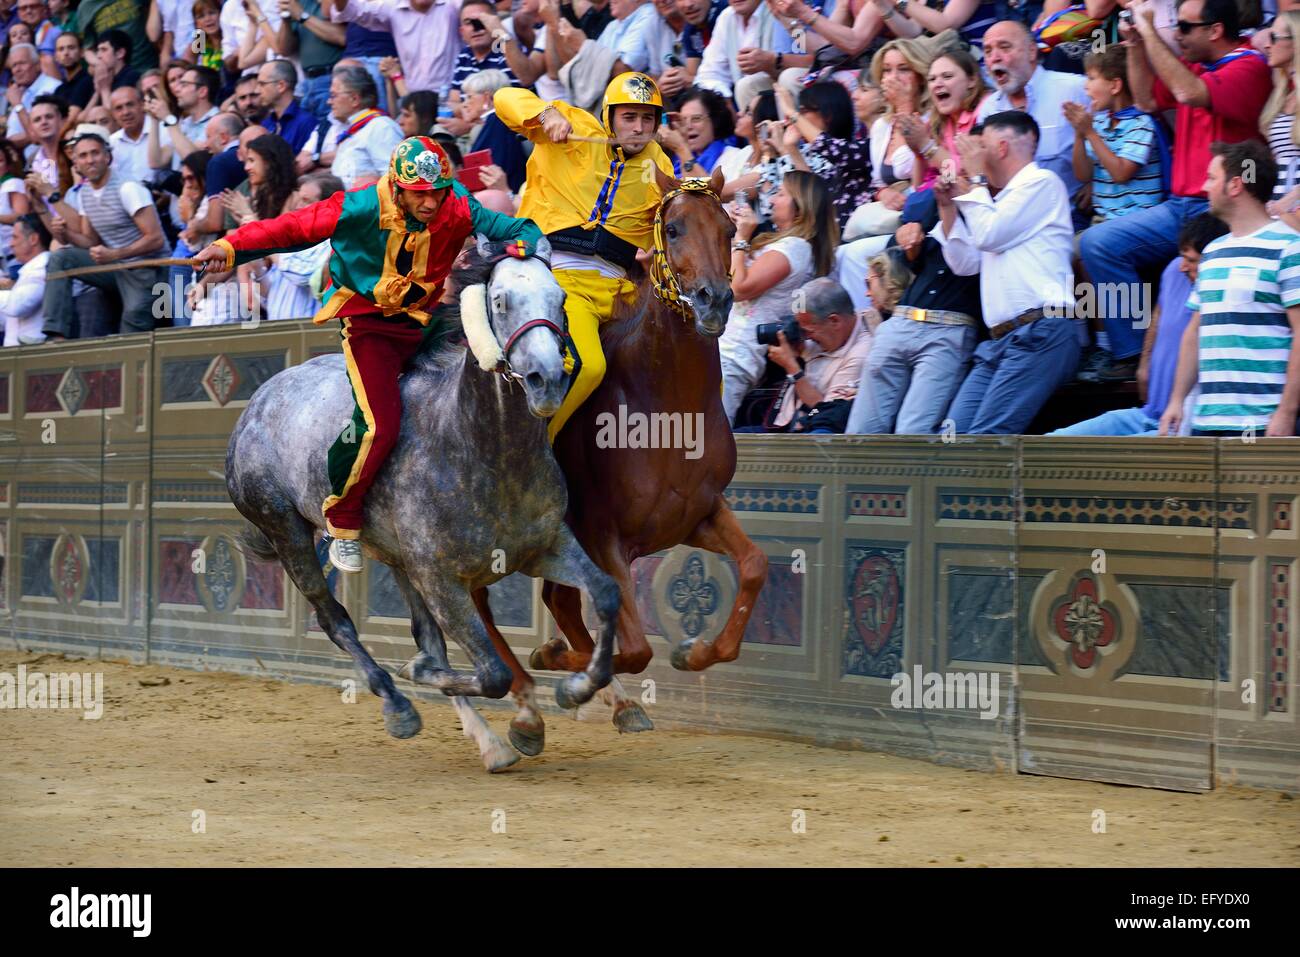 Manœuvre de dépassement du gagnant lors de l'historique course de chevaux Palio de Sienne, la Piazza del Campo, Sienne, Toscane, Italie Banque D'Images